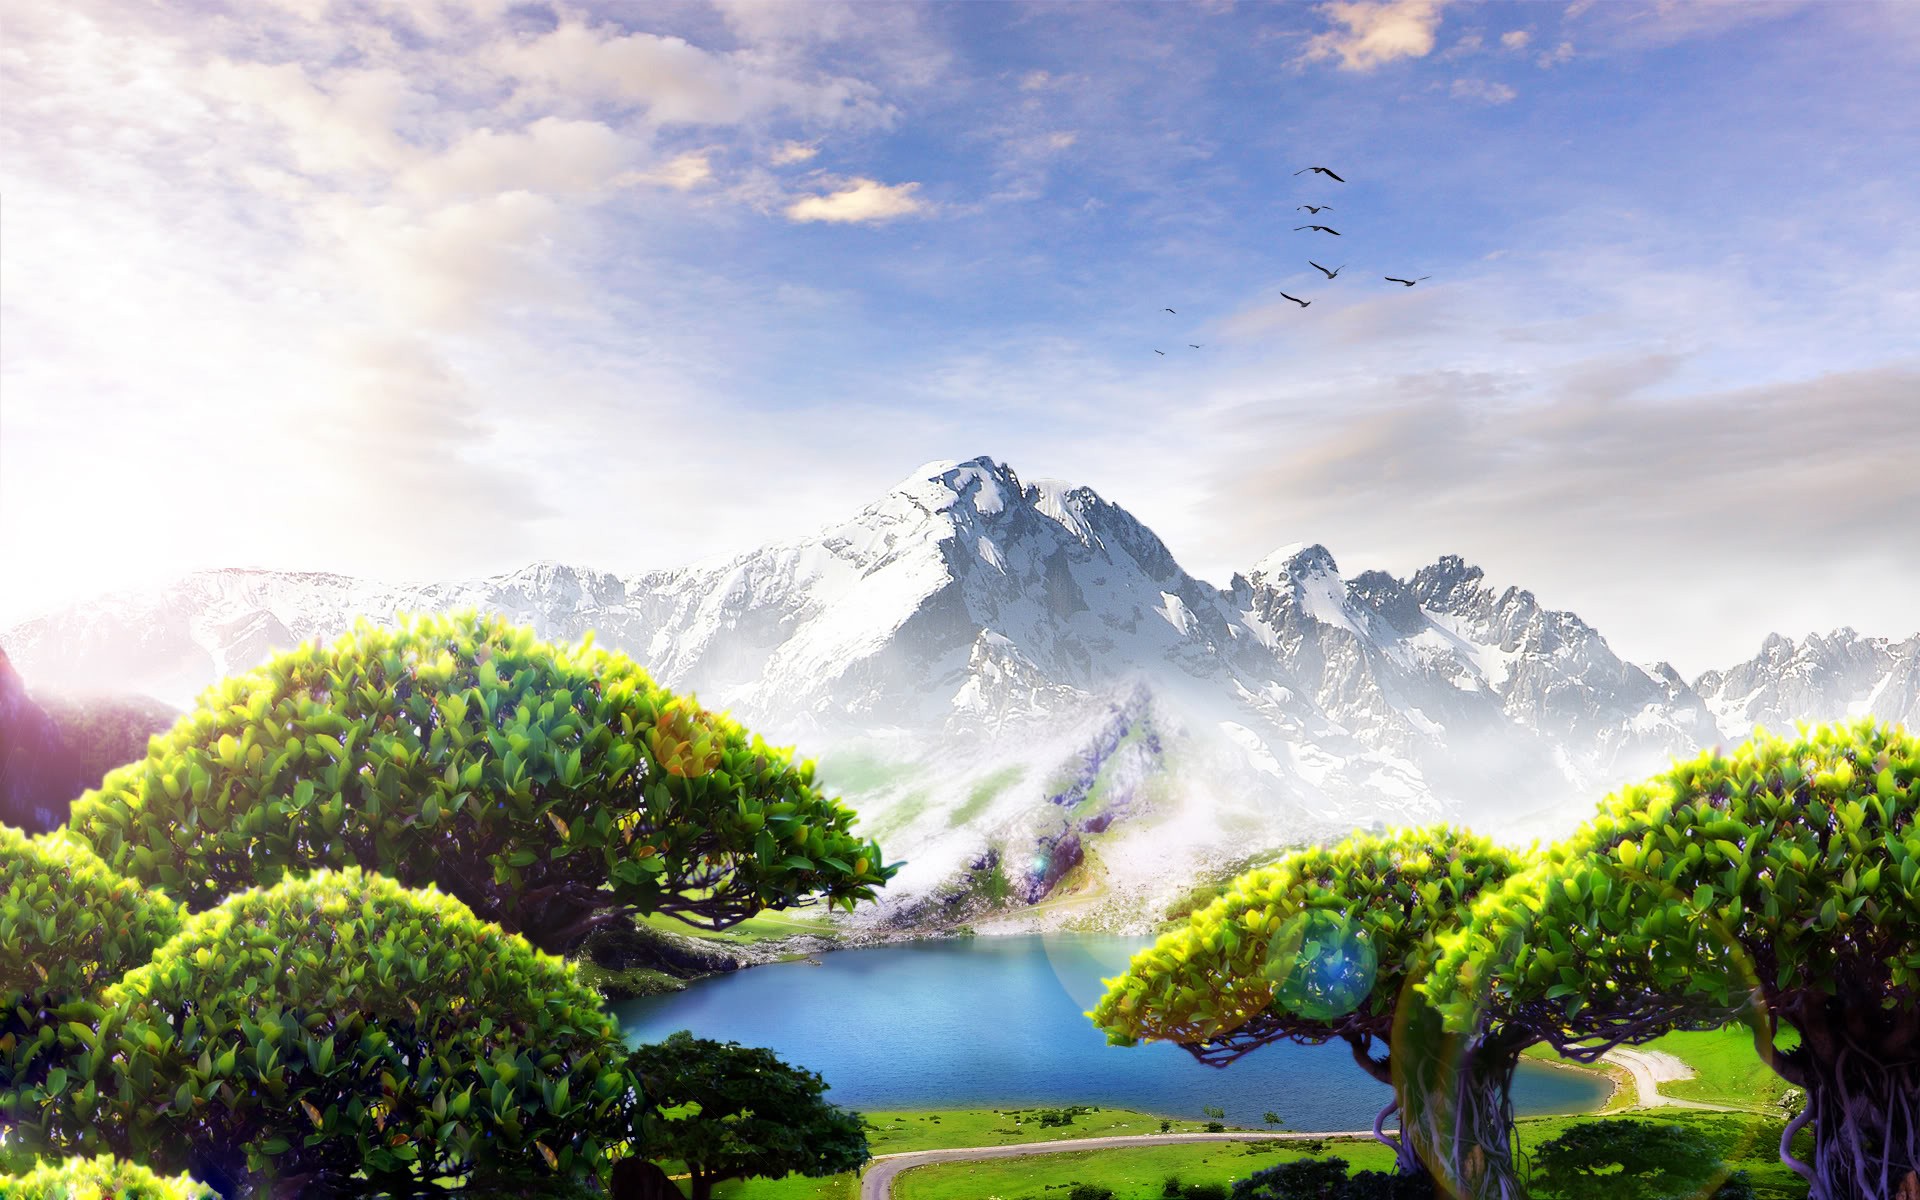 fantasy, mountains, Country - desktop wallpaper